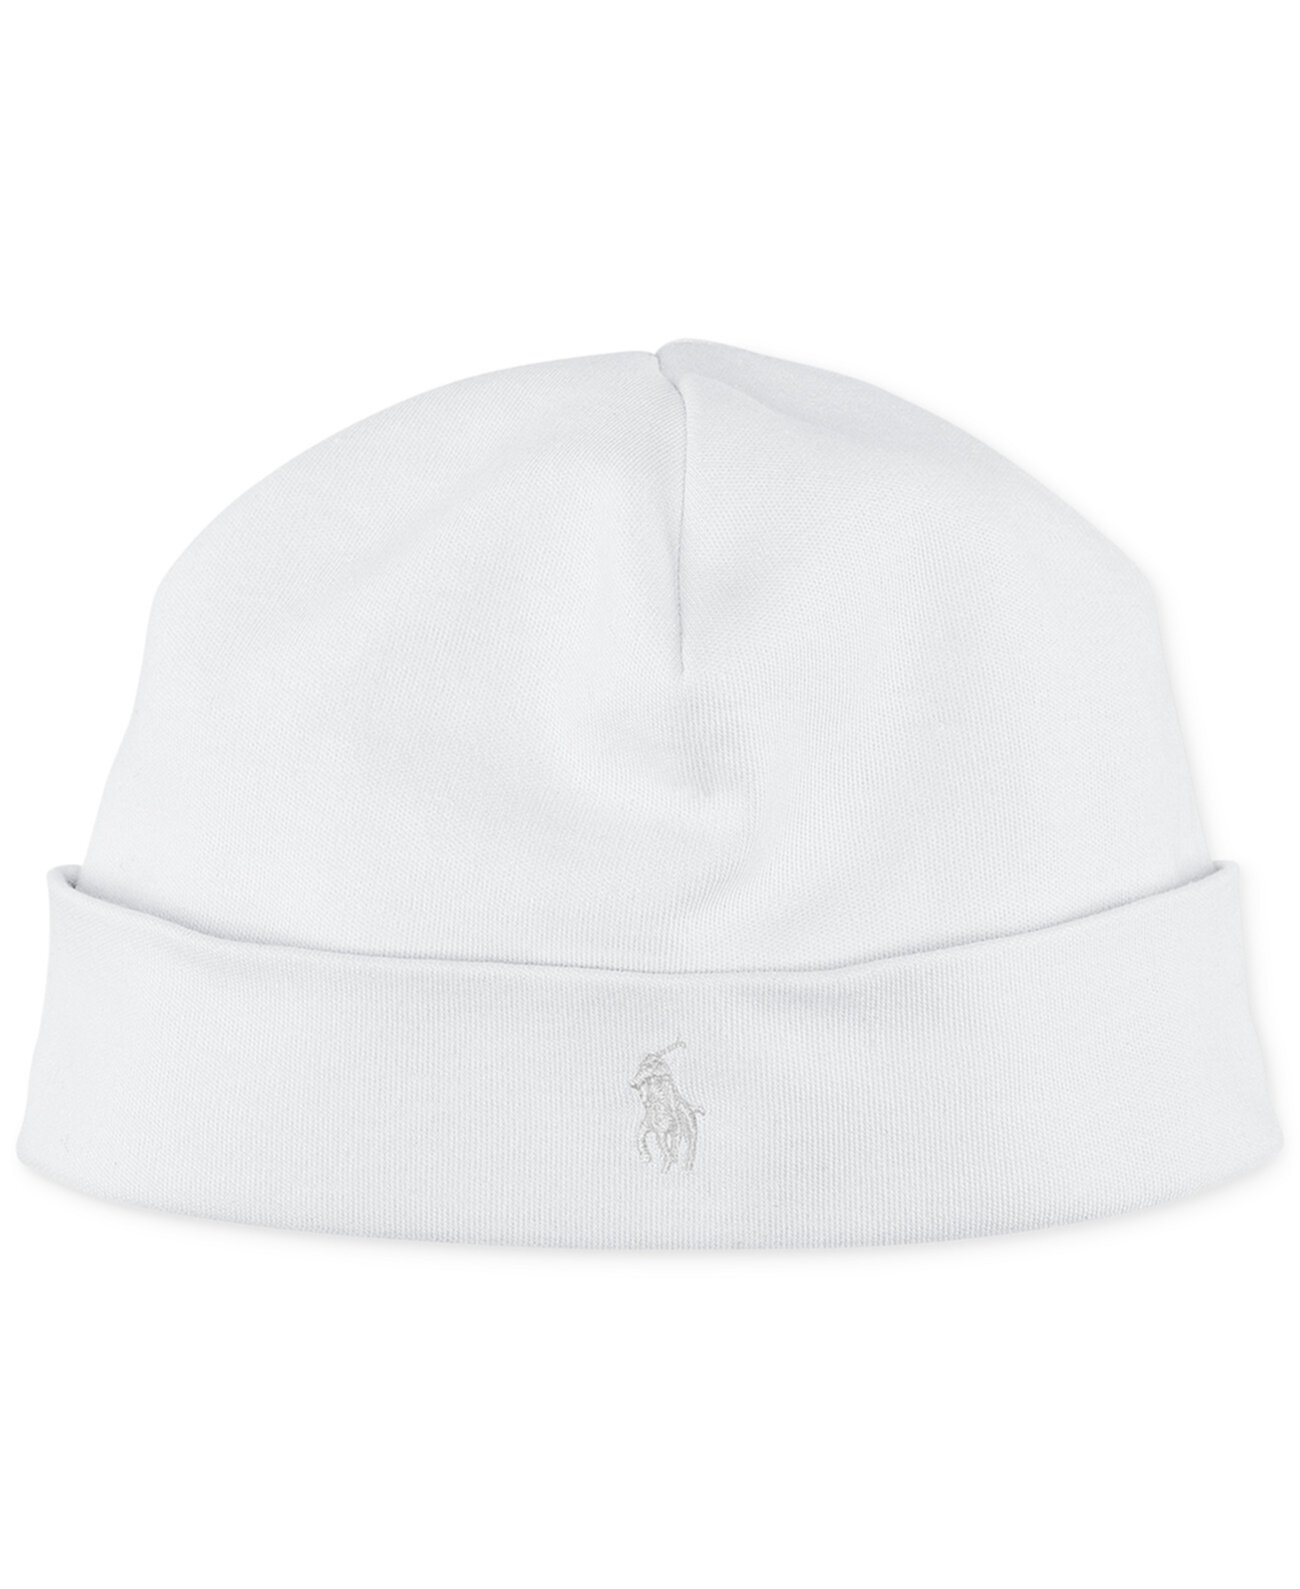 Хлопковая шапка Ralph Lauren для новорожденных девочек Polo Ralph Lauren